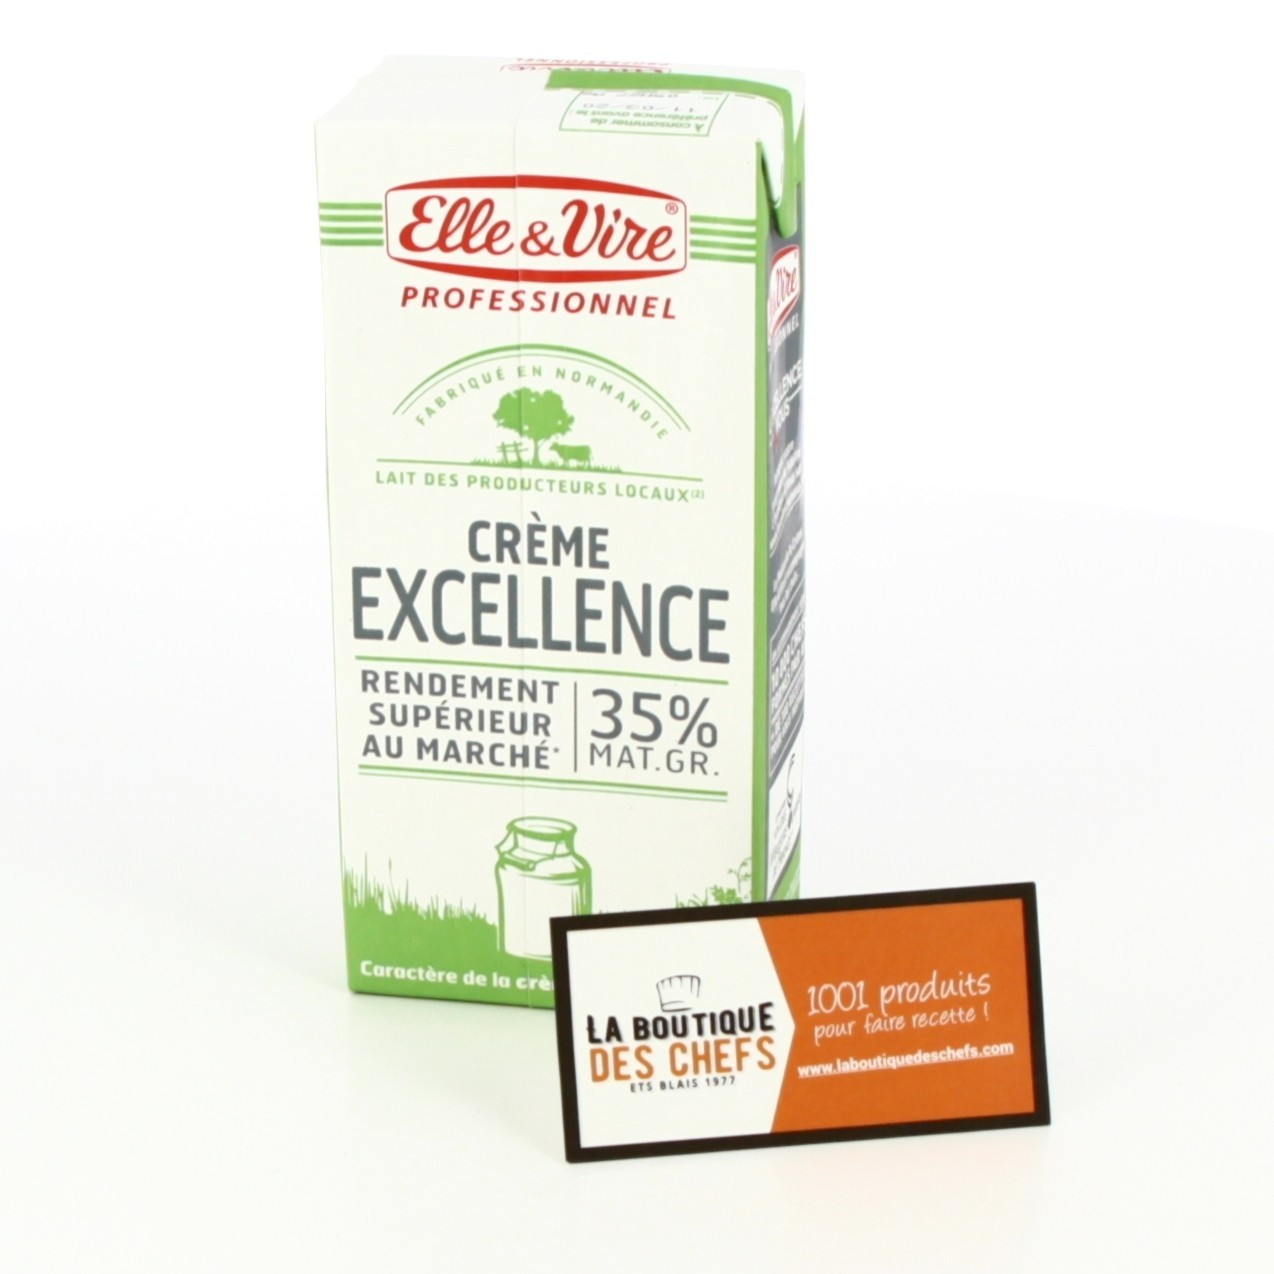 Crème liquide Excellence Pâtisserie 35% MG 1 L - Elle & Vire